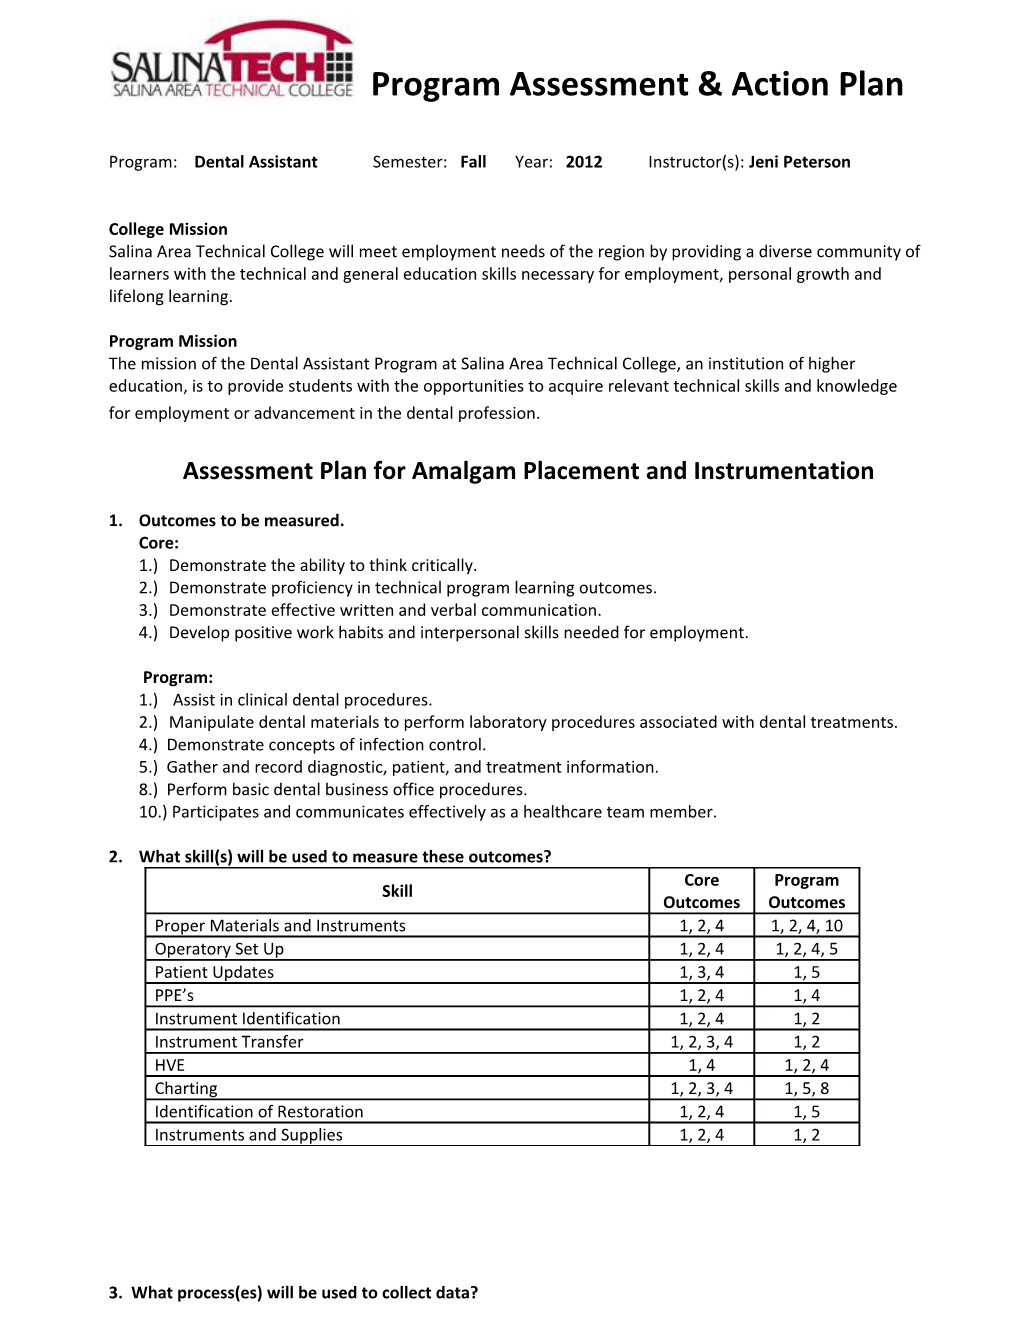 Program Assessment Action Plan